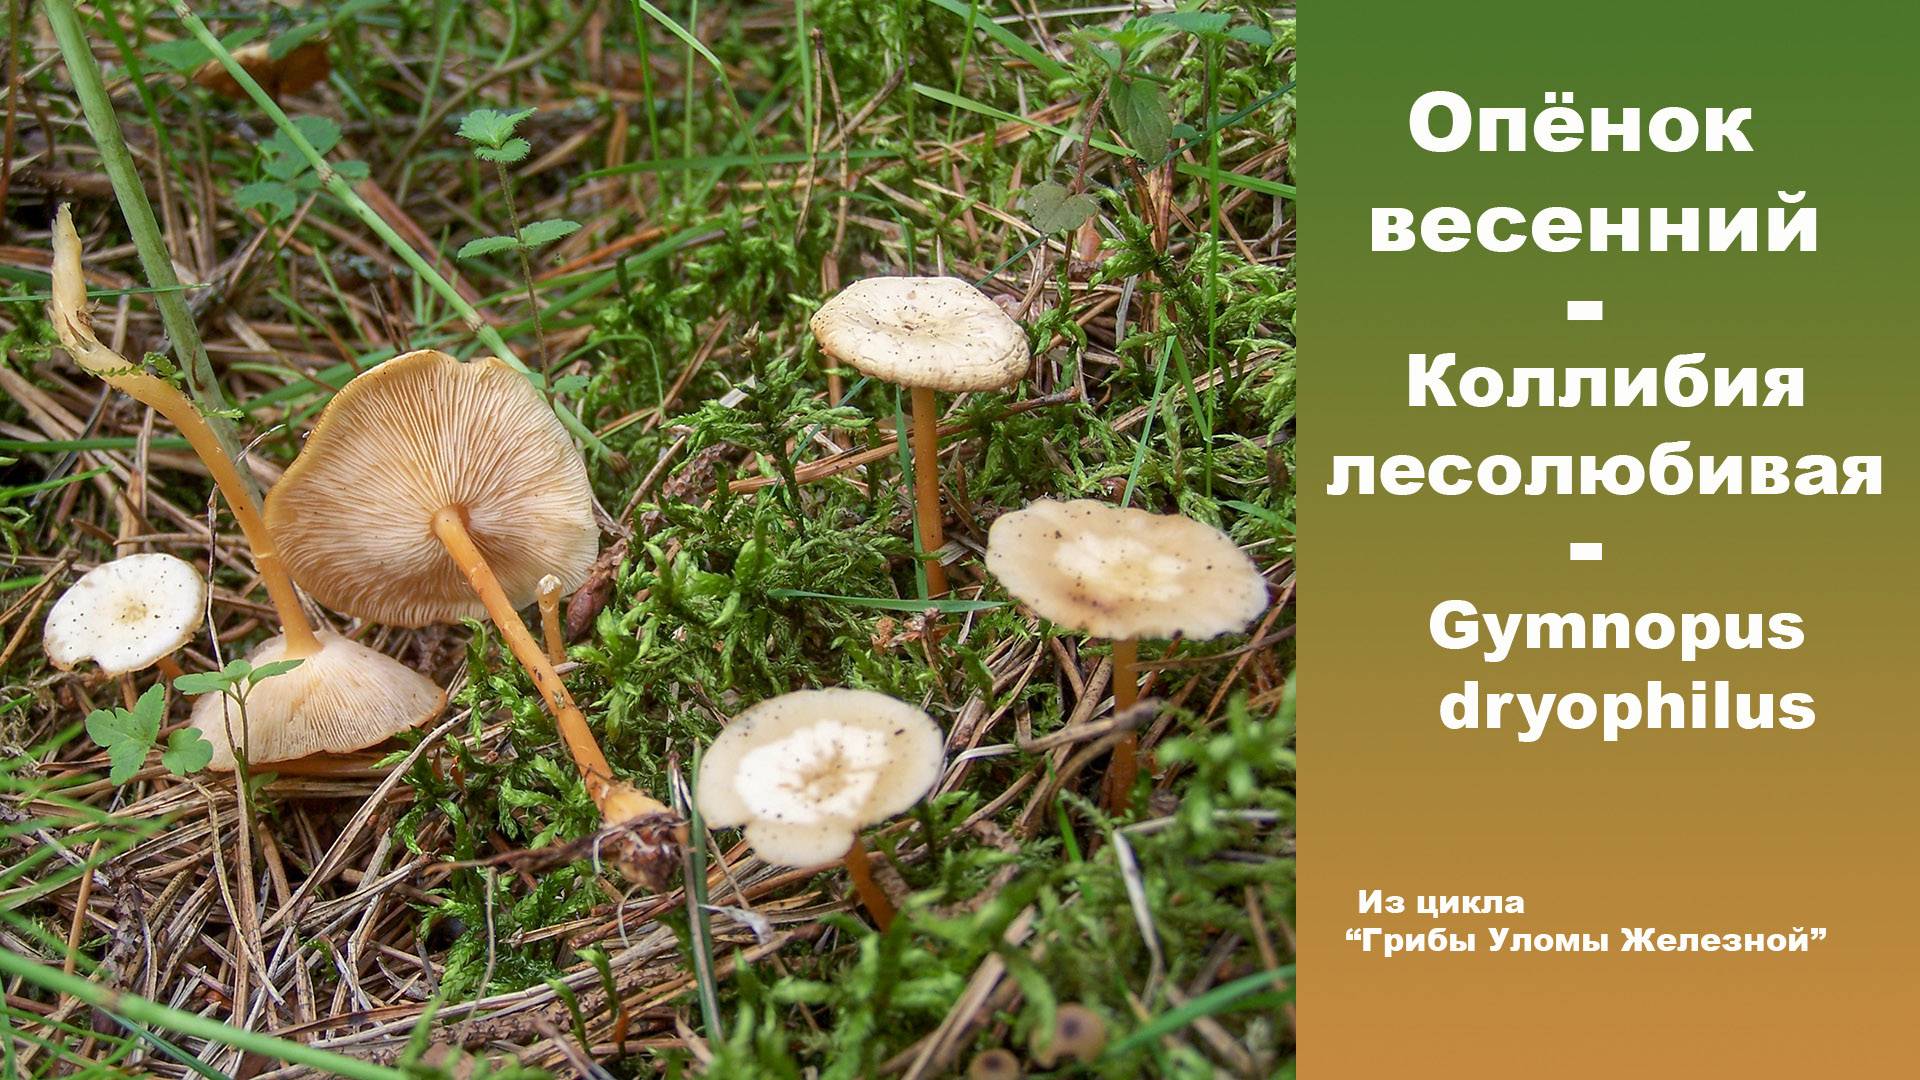 Выращивание грибов опят агроцибе или тополиных опят в домашних условиях / съедобные грибы, ягоды, травы